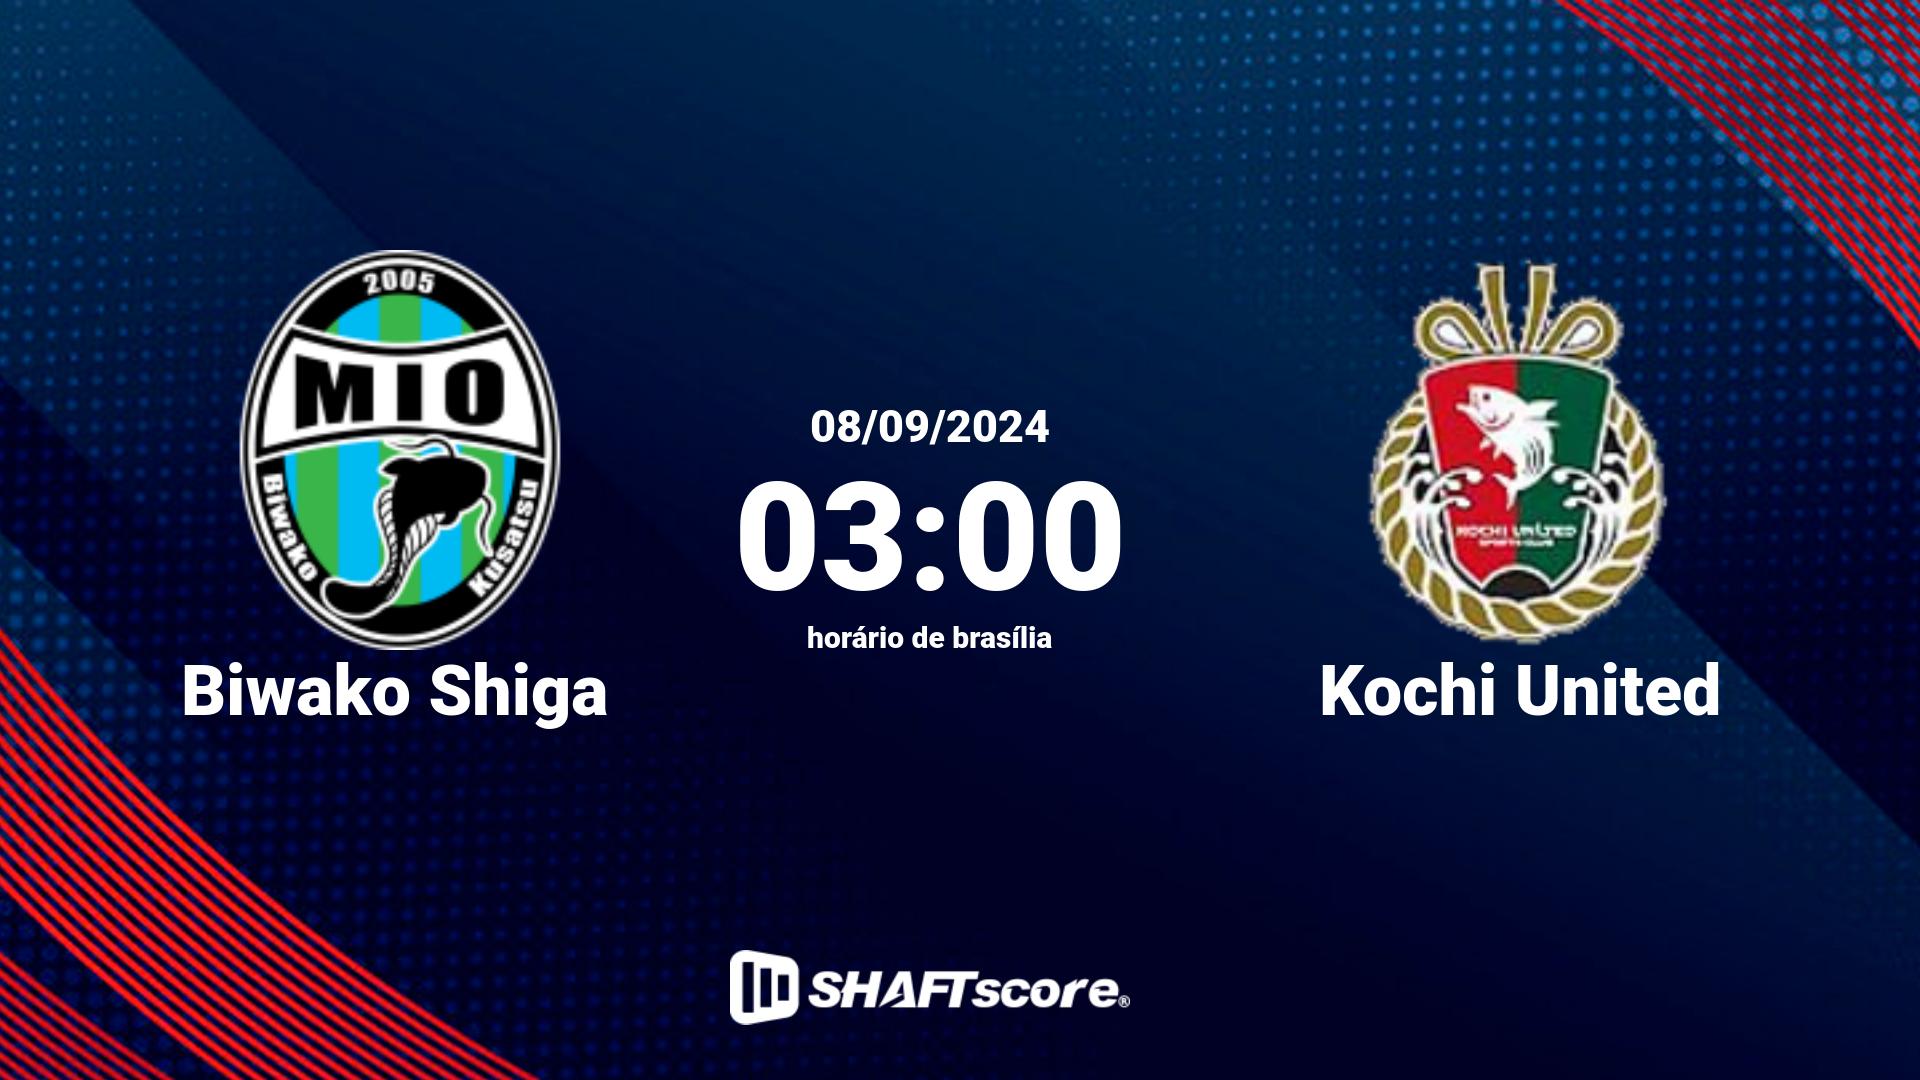 Estatísticas do jogo Biwako Shiga vs Kochi United 08.09 03:00